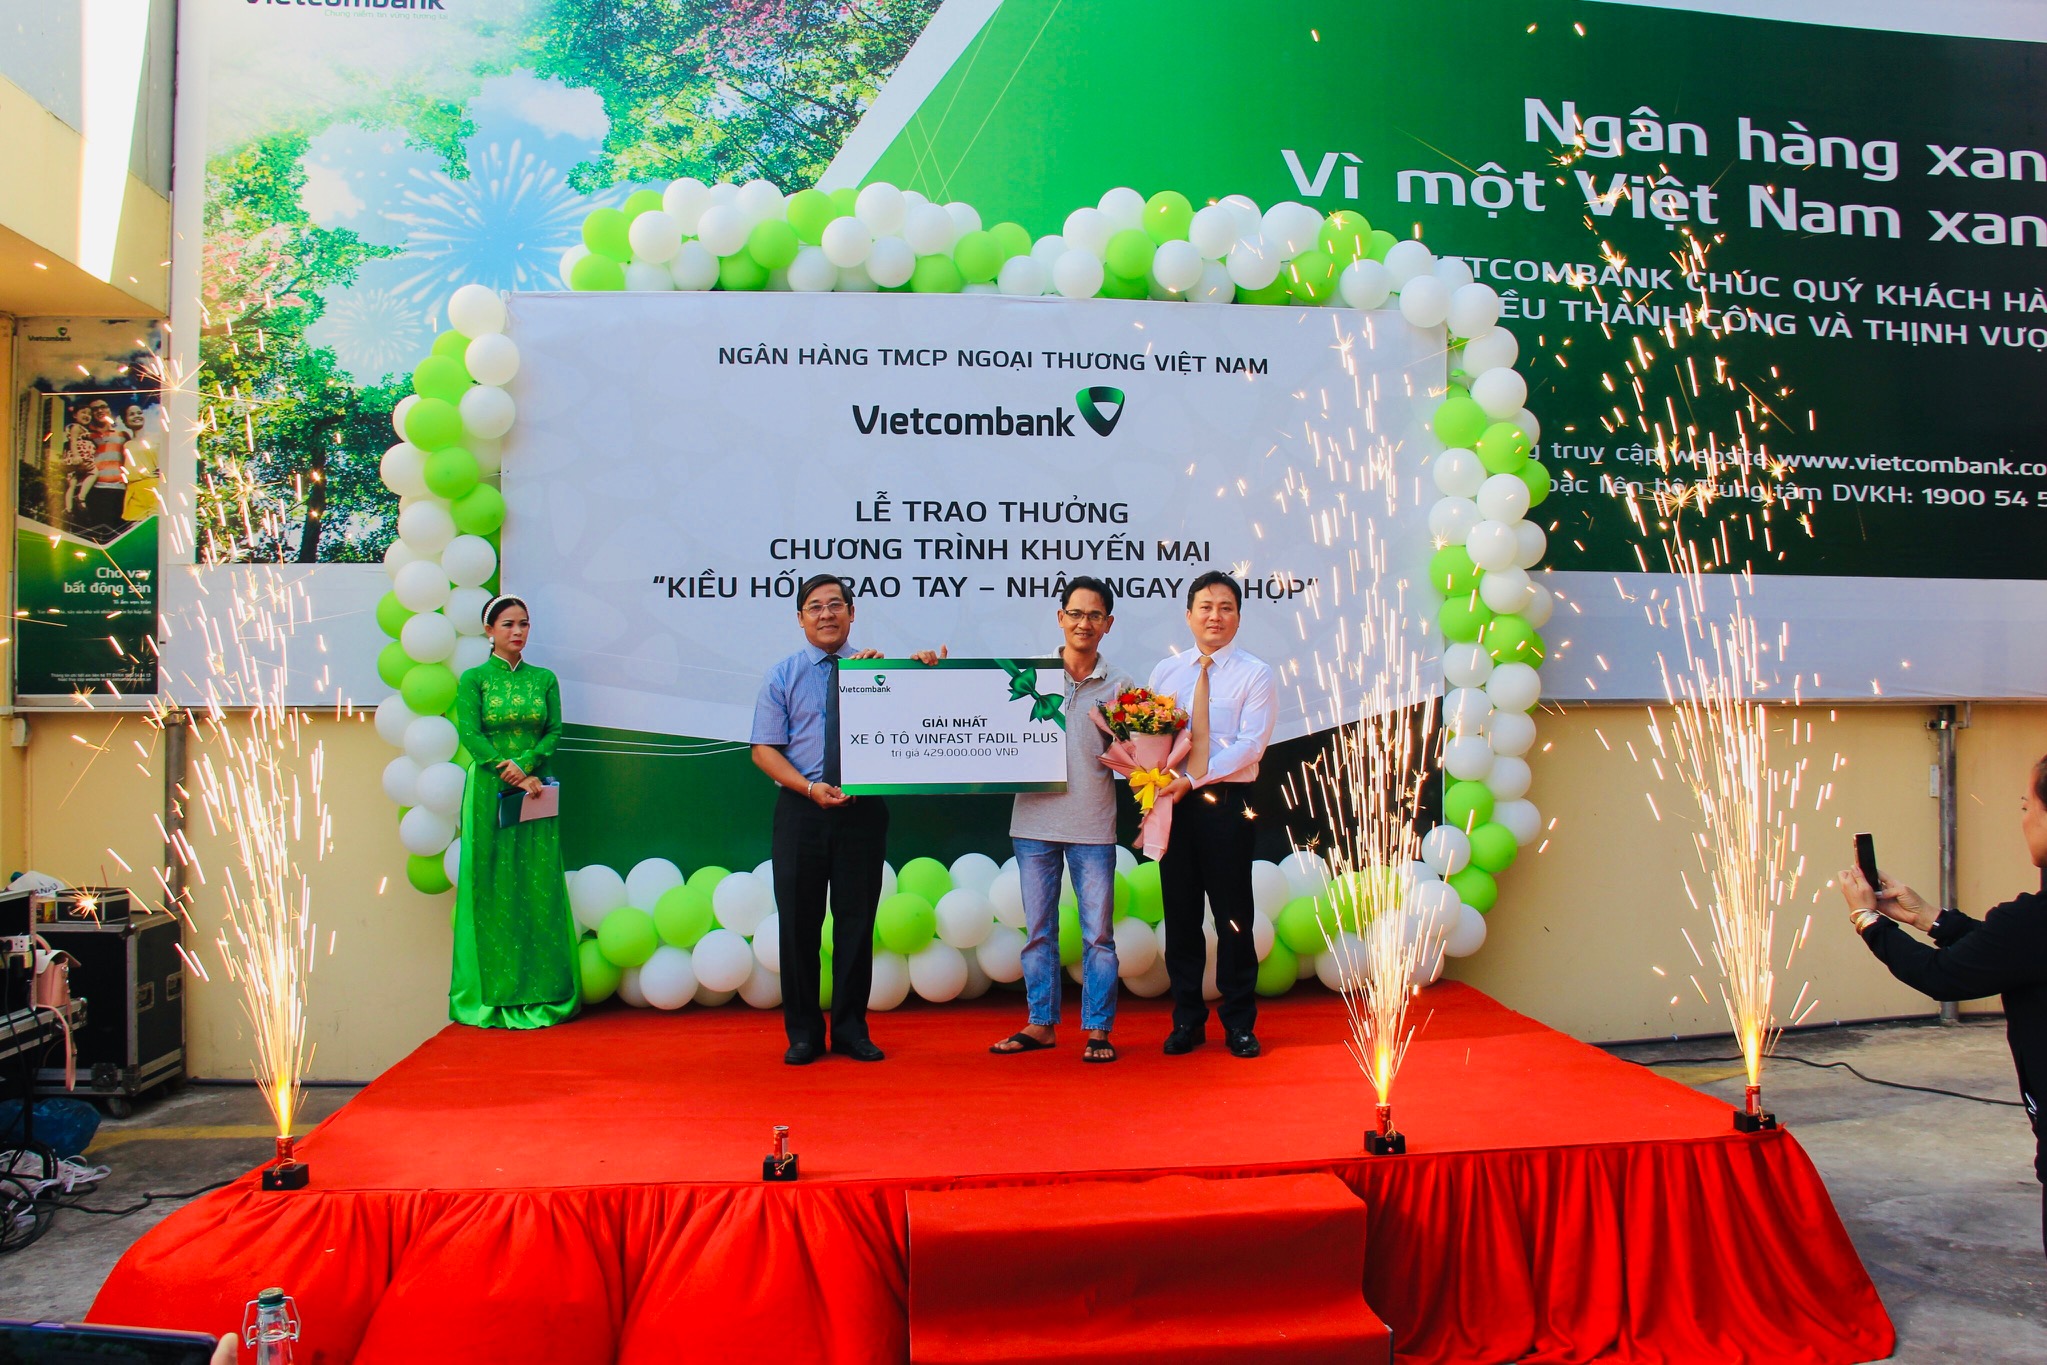 Vietcombank Sóc Trăng trao giải Nhất chương trình “Kiều hối trao tay – Nhận ngay xế hộp” và hỗ trợ nhóm thiện nguyện sản xuất dung dịch sát khuẩn chống dịch Covid – 19